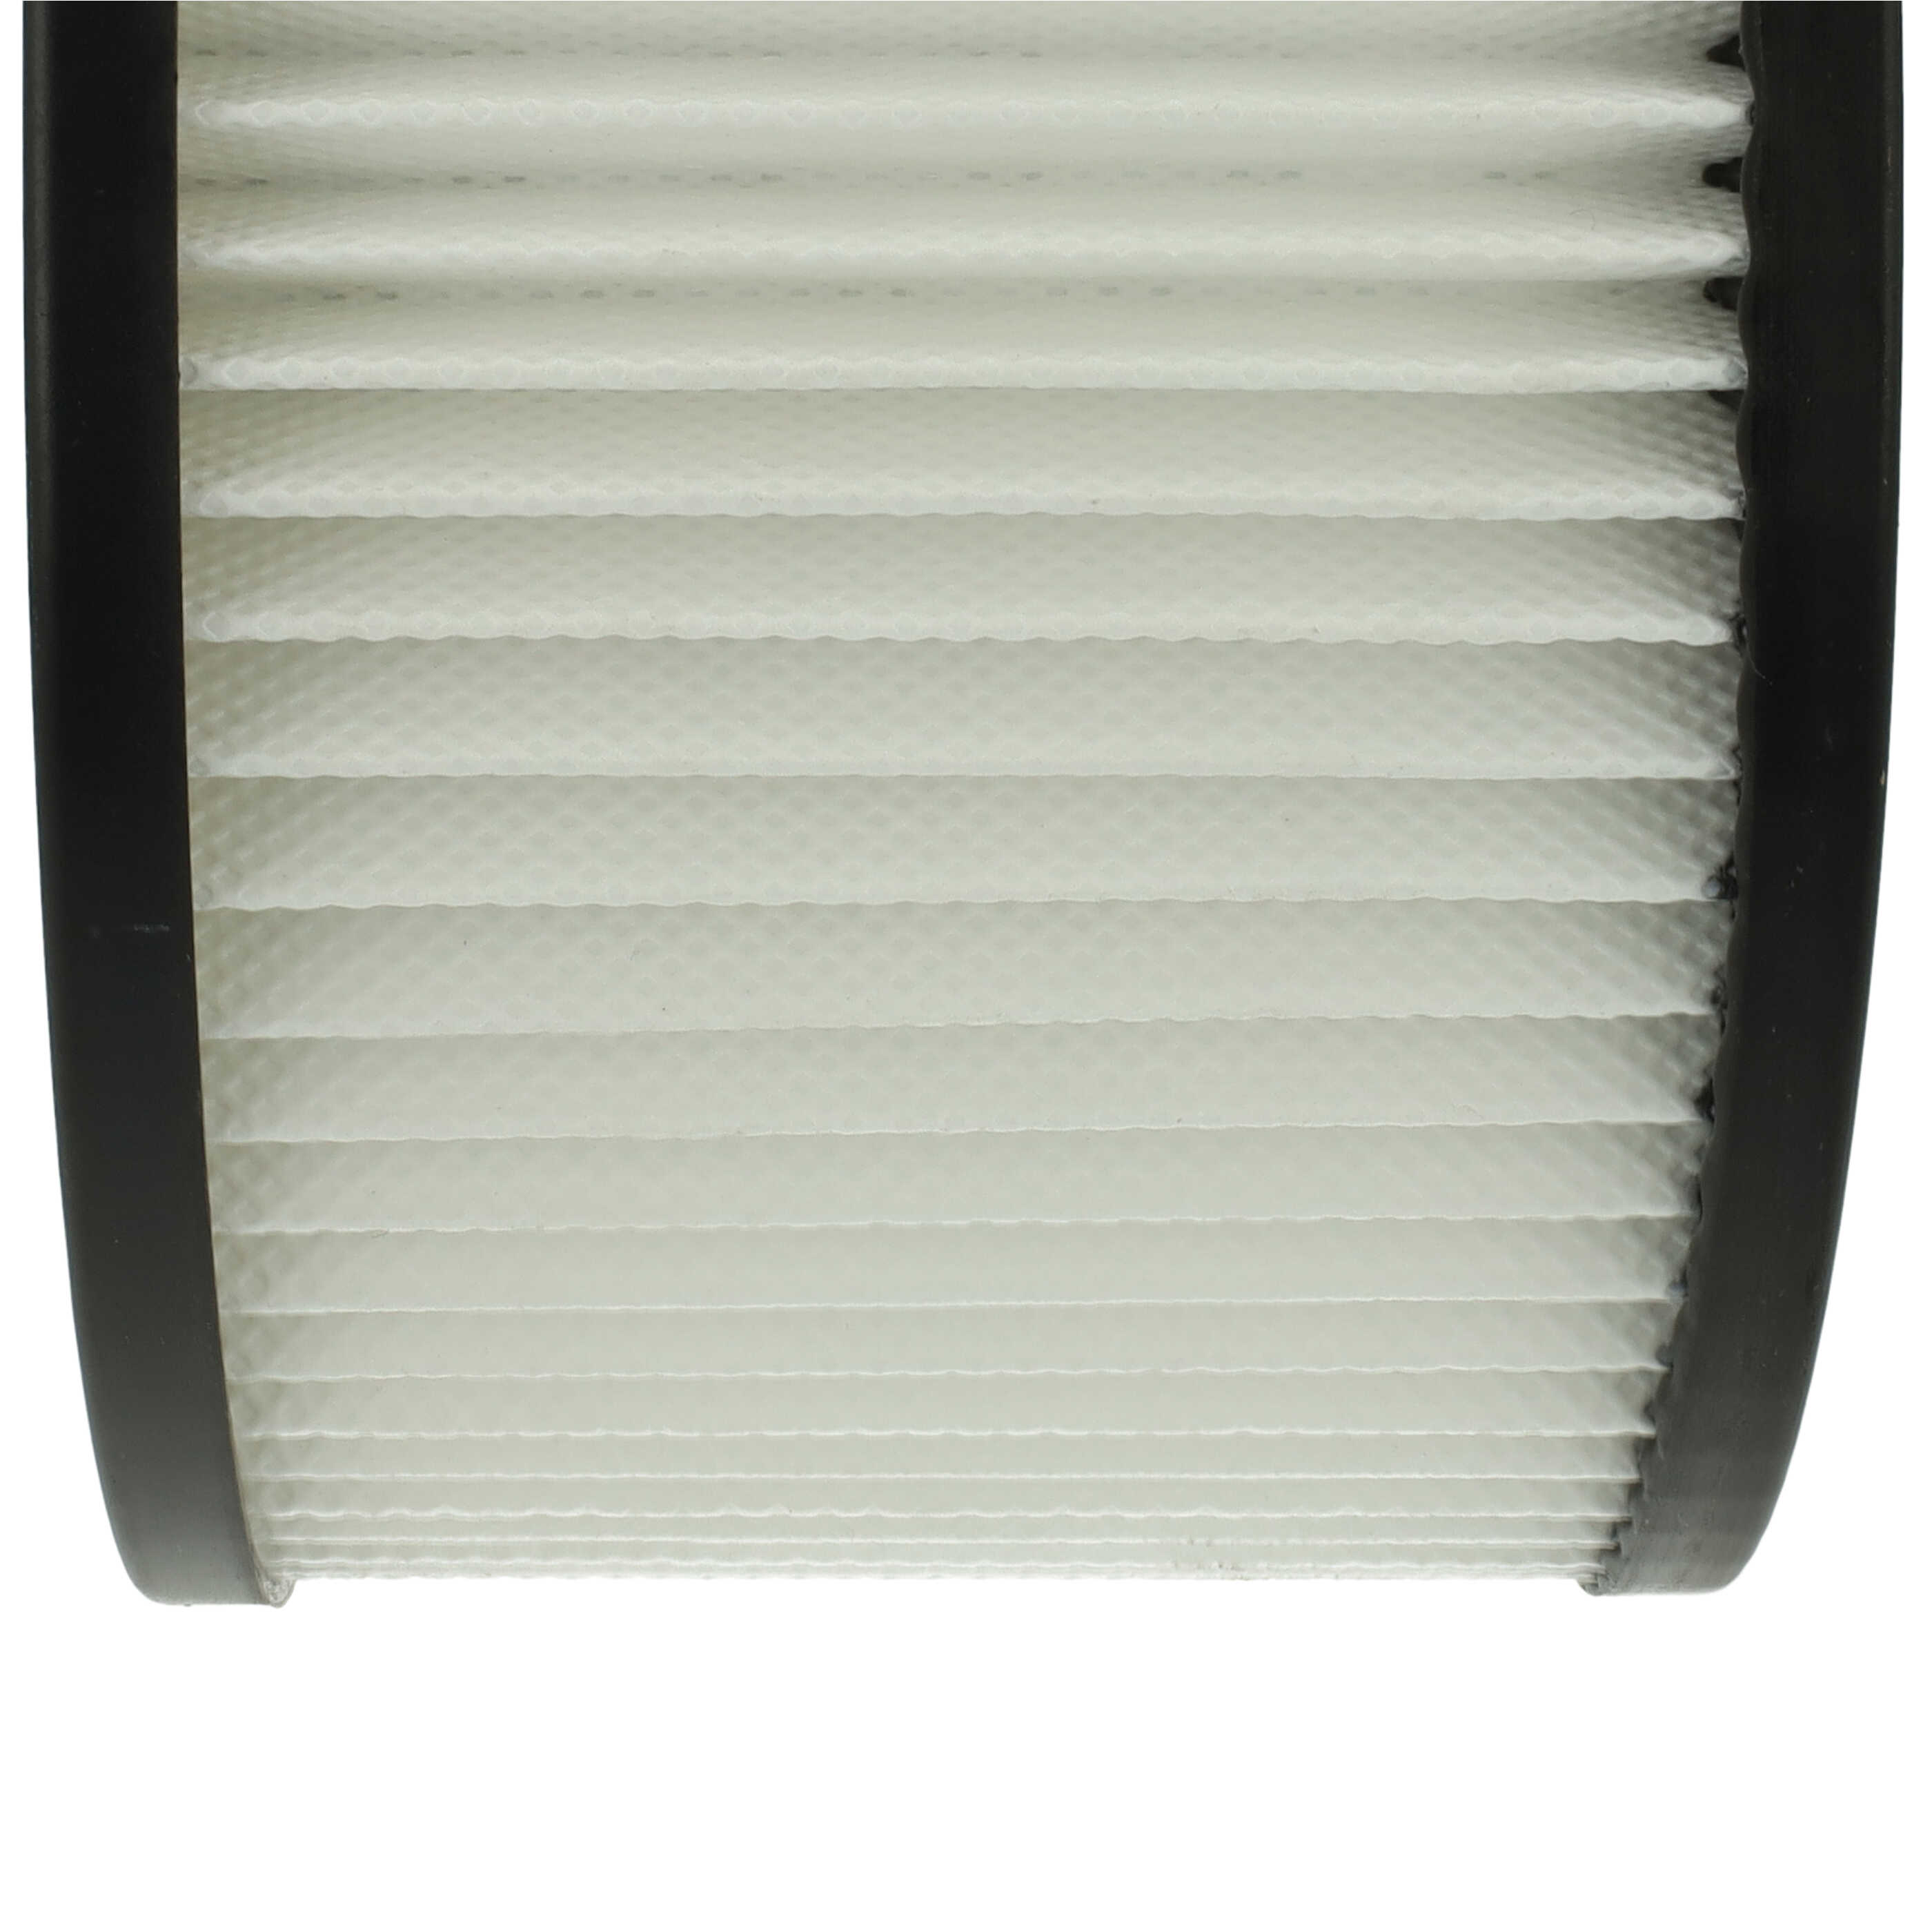 Filtre remplace Oxeo 760023 pour aspirateur de cheminée - filtre HEPA